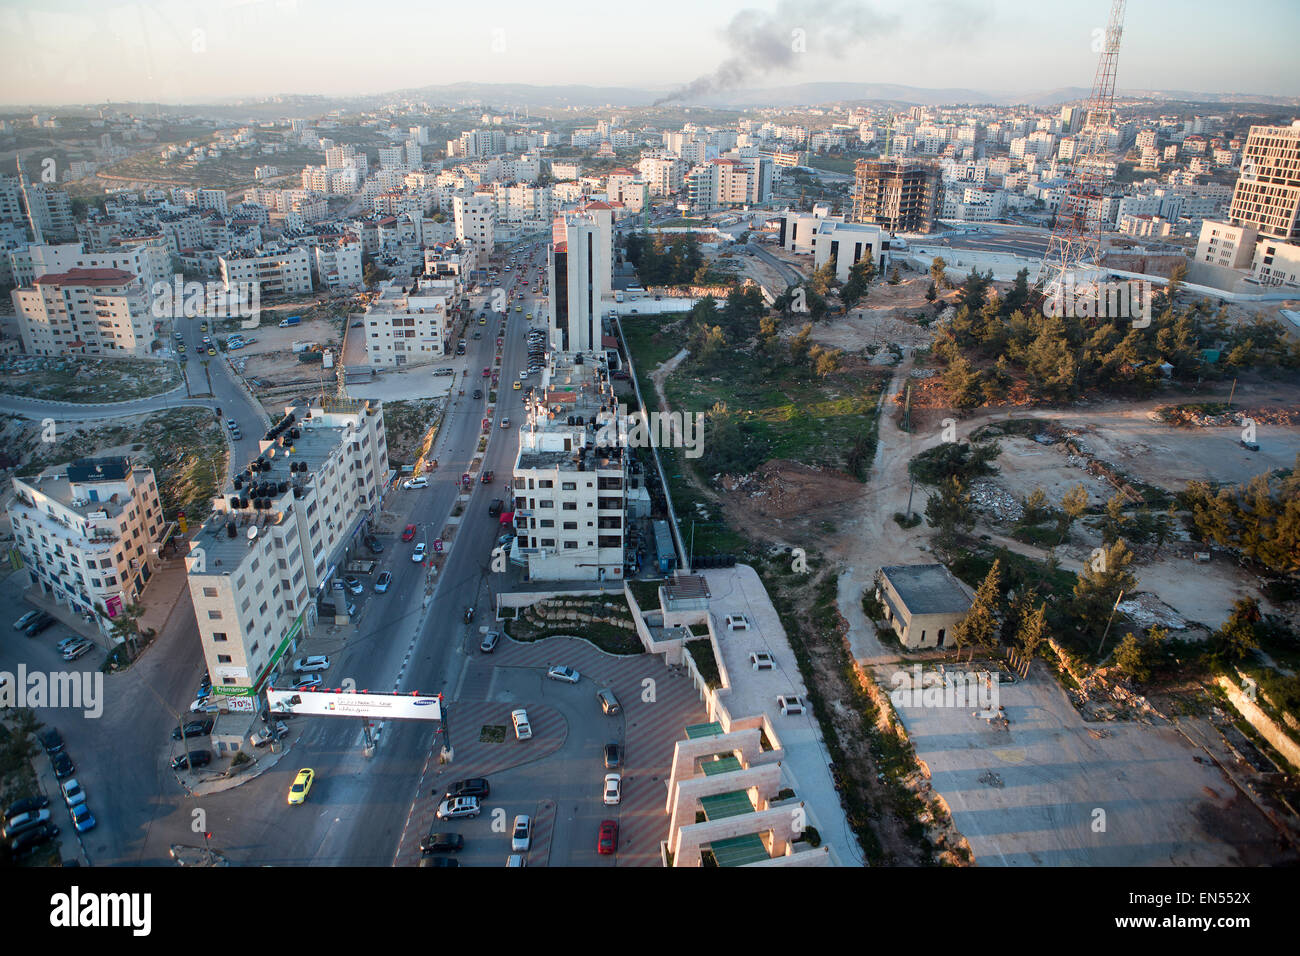 La ville de Ramallah, Cisjordanie, Palestine Banque D'Images